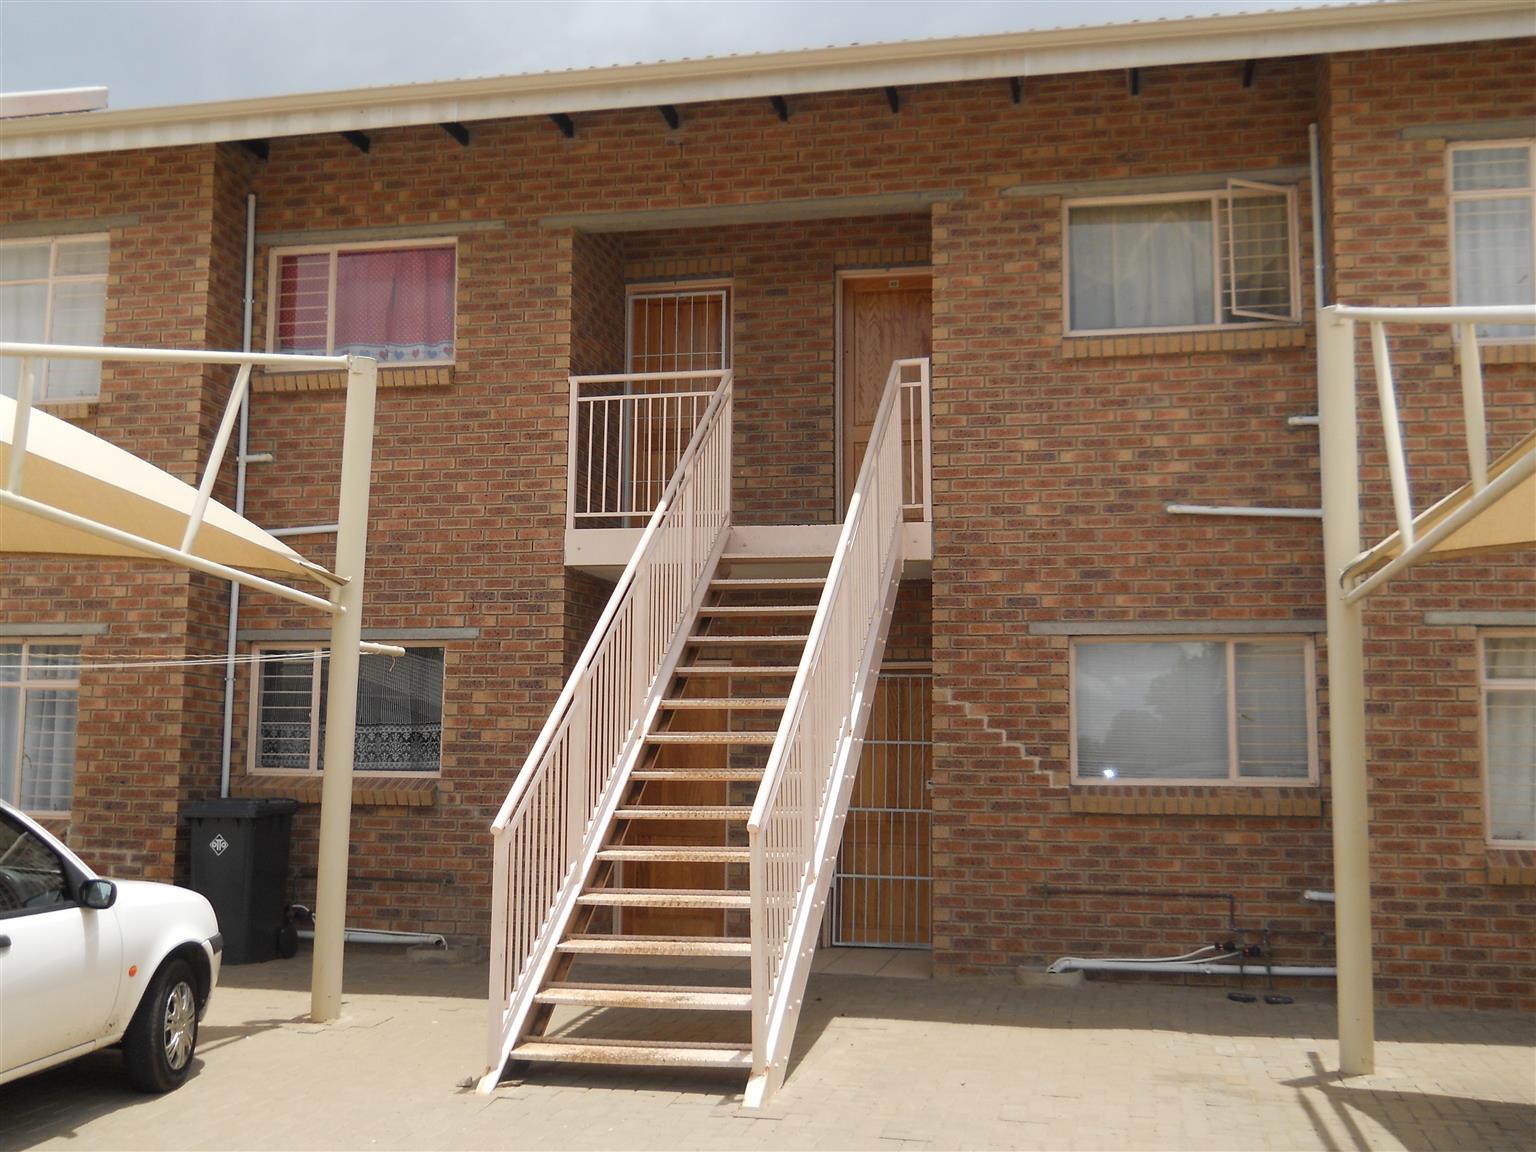 For Rent Apartments 1 Bedroom Bathroom Bloemfontein Listings